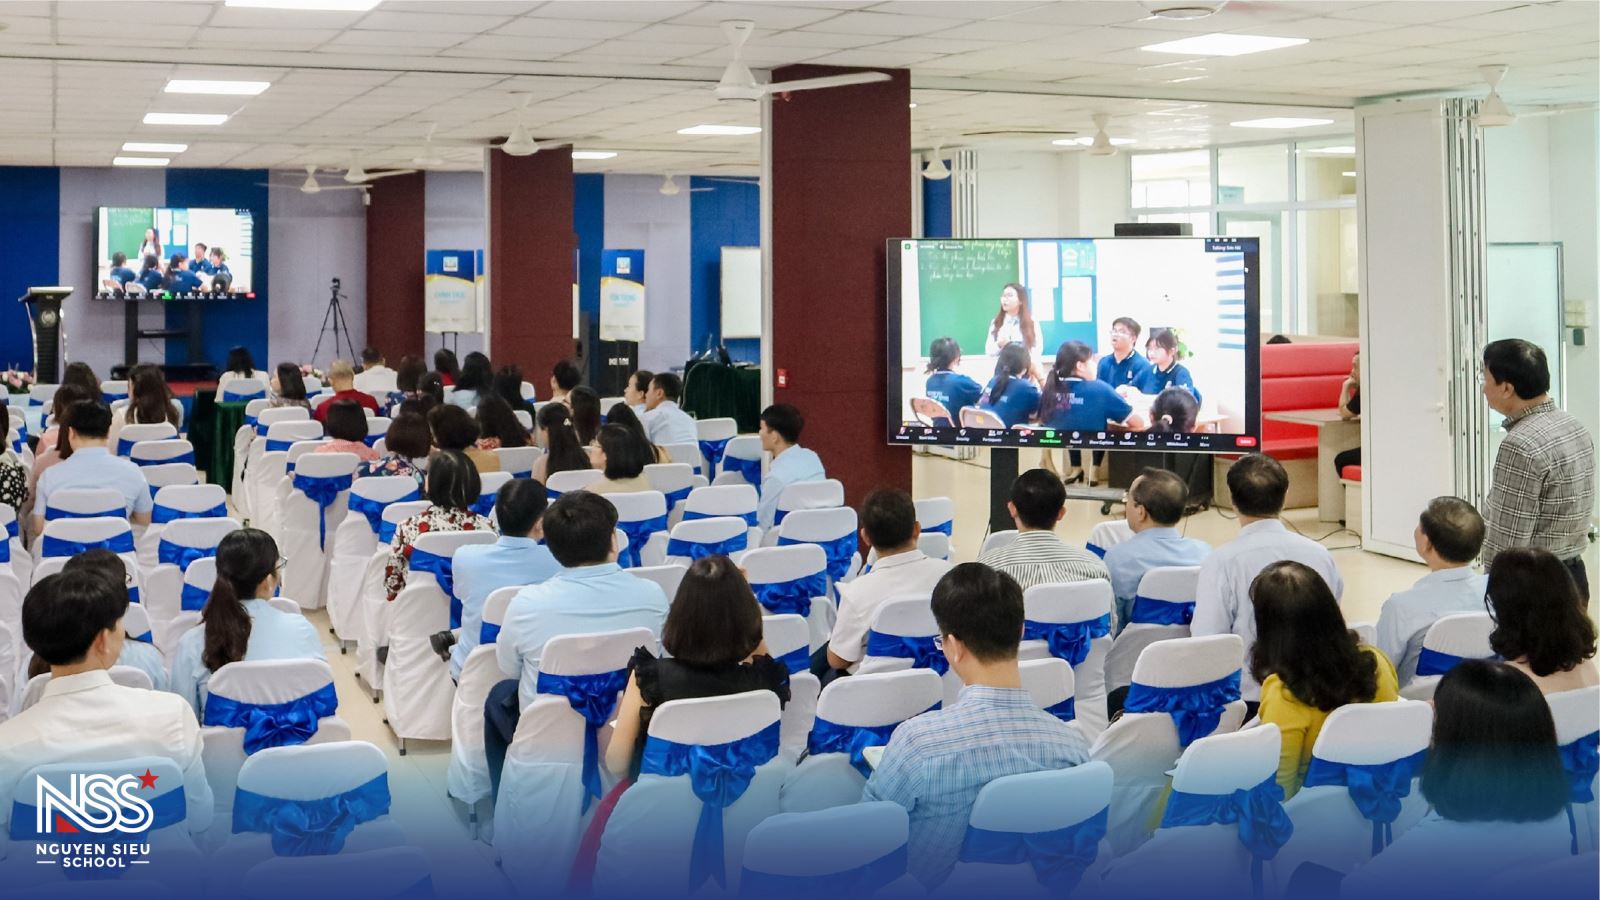 Tiết dạy của GV Nguyễn Siêu phủ sóng trực tiếp các trường THPT ở Hà Nội